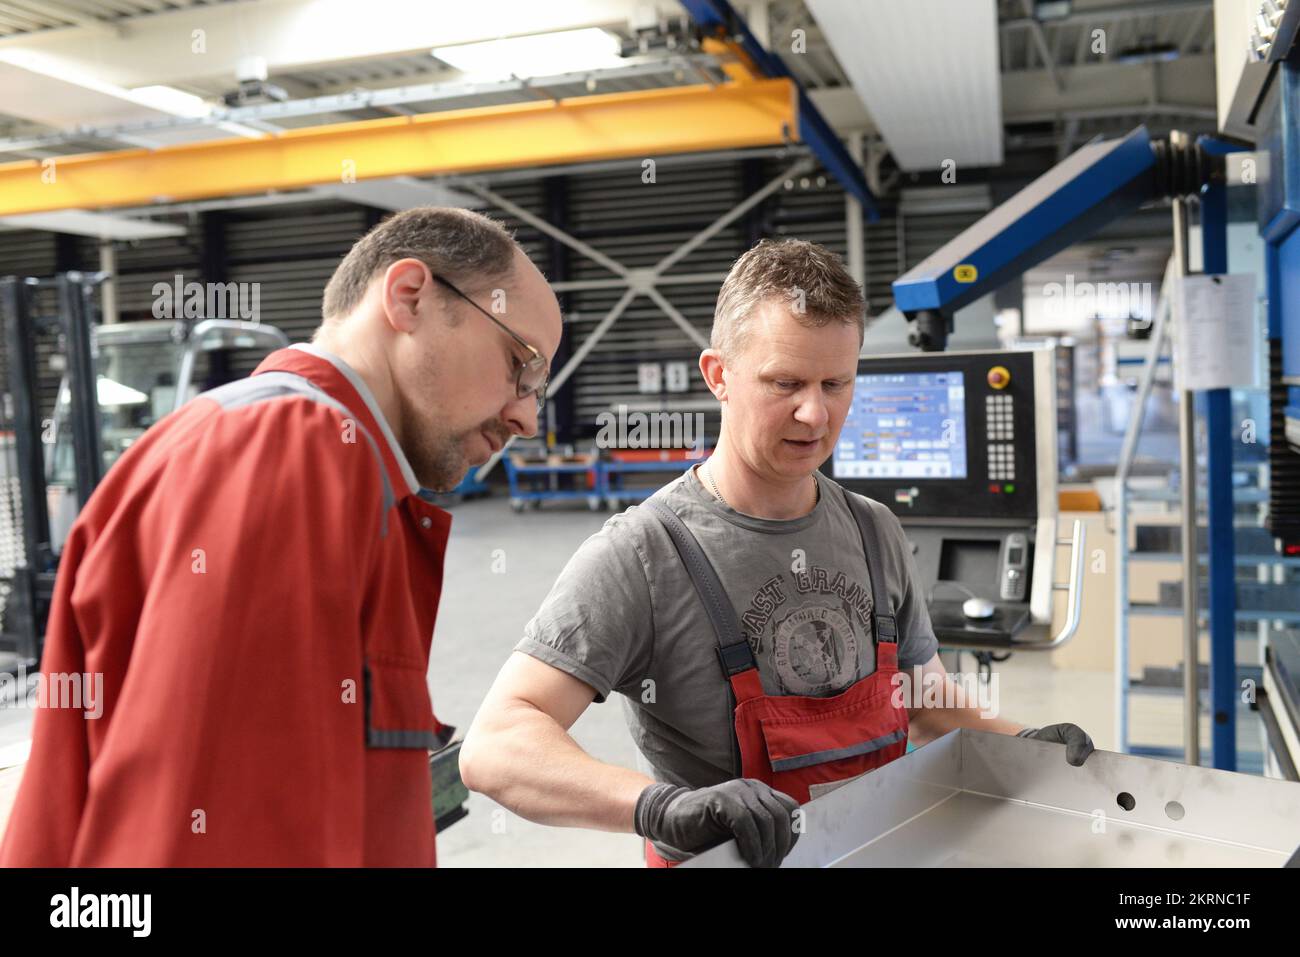 Teamarbeit in der Metallindustrie - zwei Arbeiter und Ingenieure sprechen über die Arbeit in einem Metallbauunternehmen Stockfoto